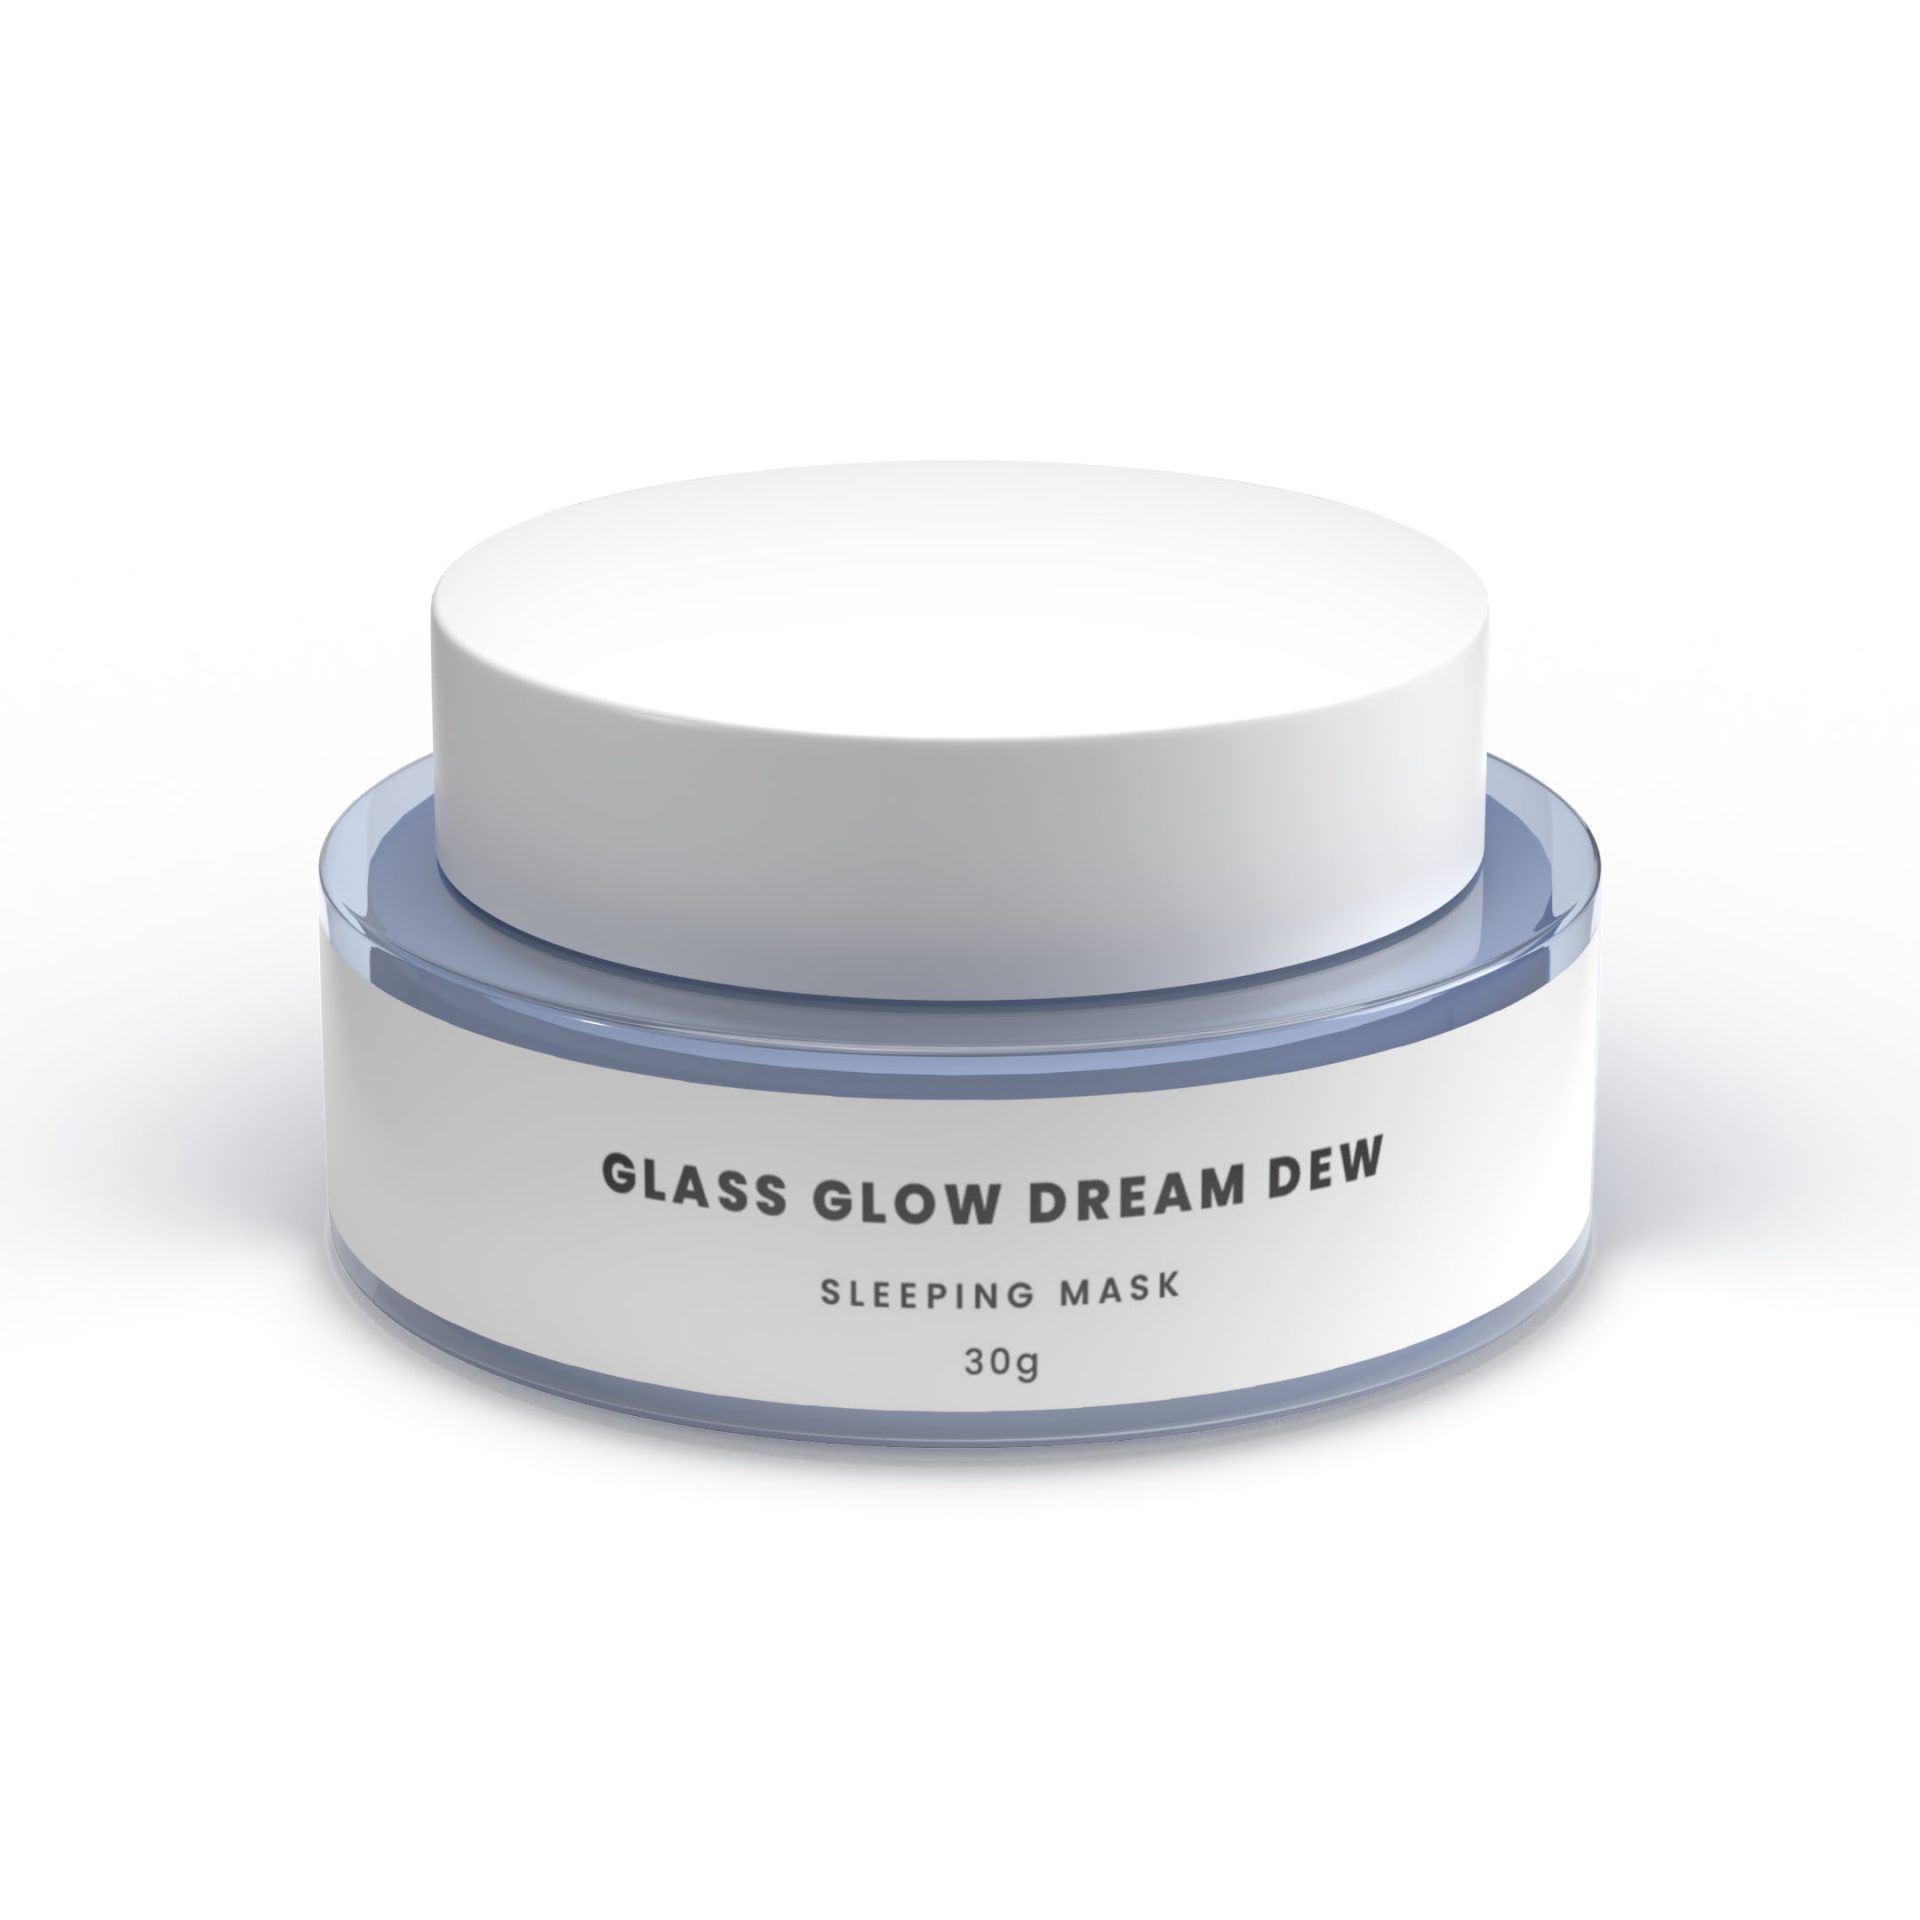 Glass Glow Dream Dew